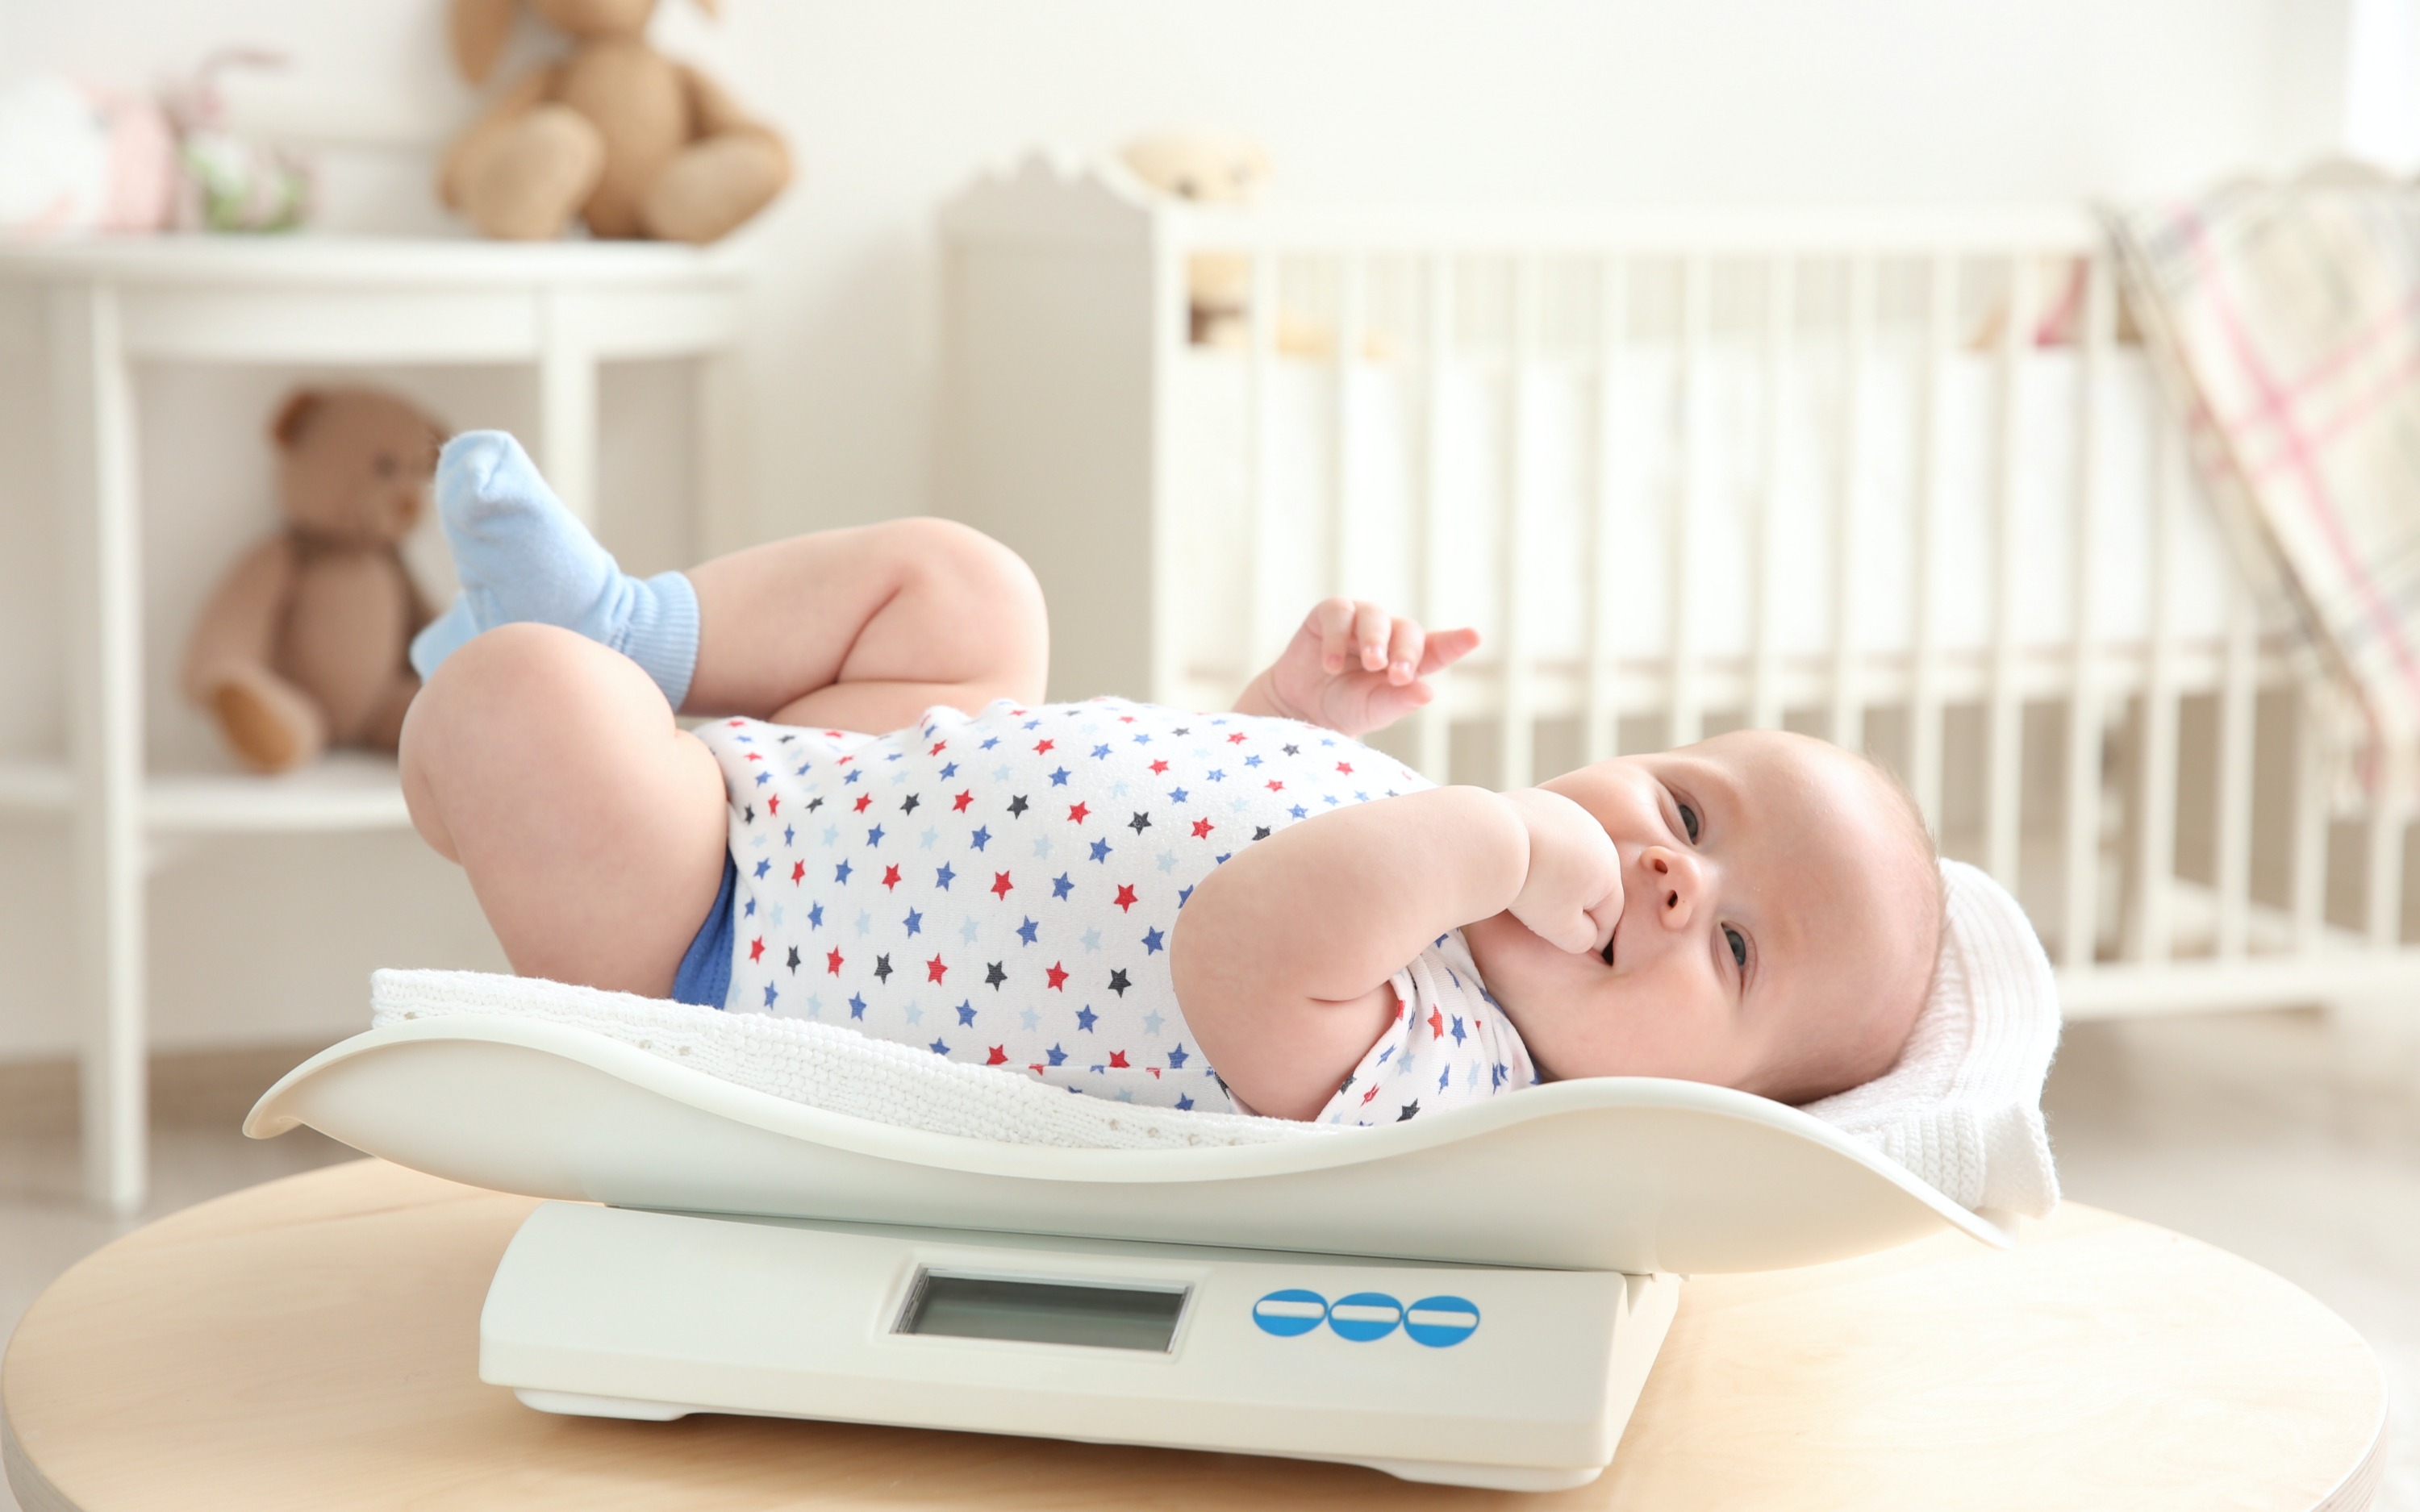 Việc đo cân nặng ở trẻ tương đối dễ dàng dù ở trong bất kỳ độ tuổi nào